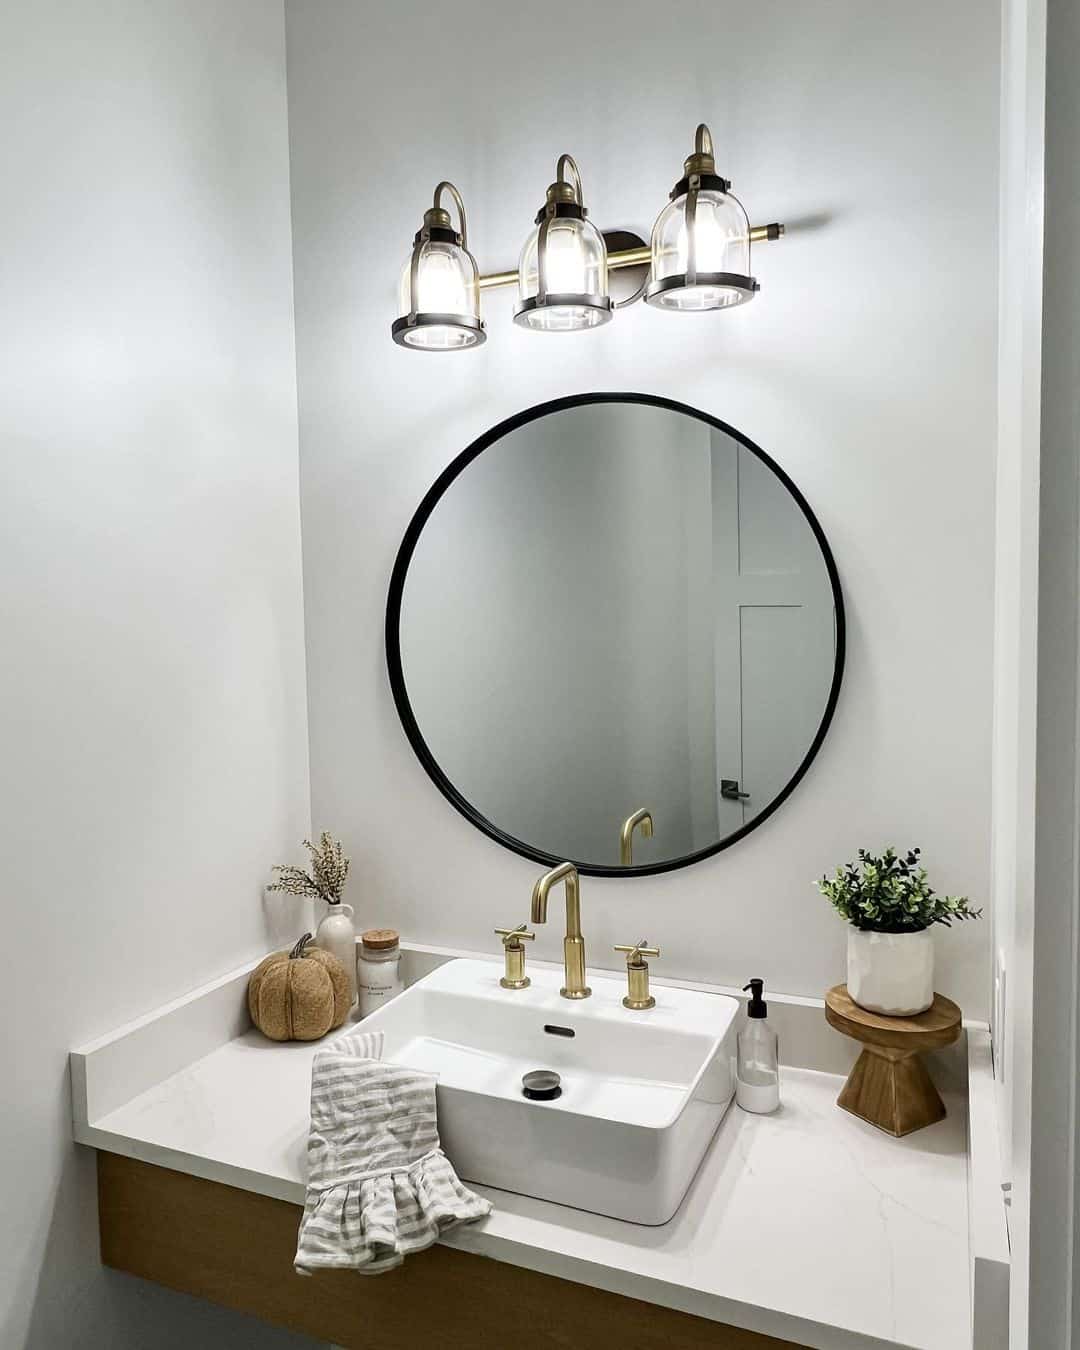 27 Unique Bathroom Sink Ideas